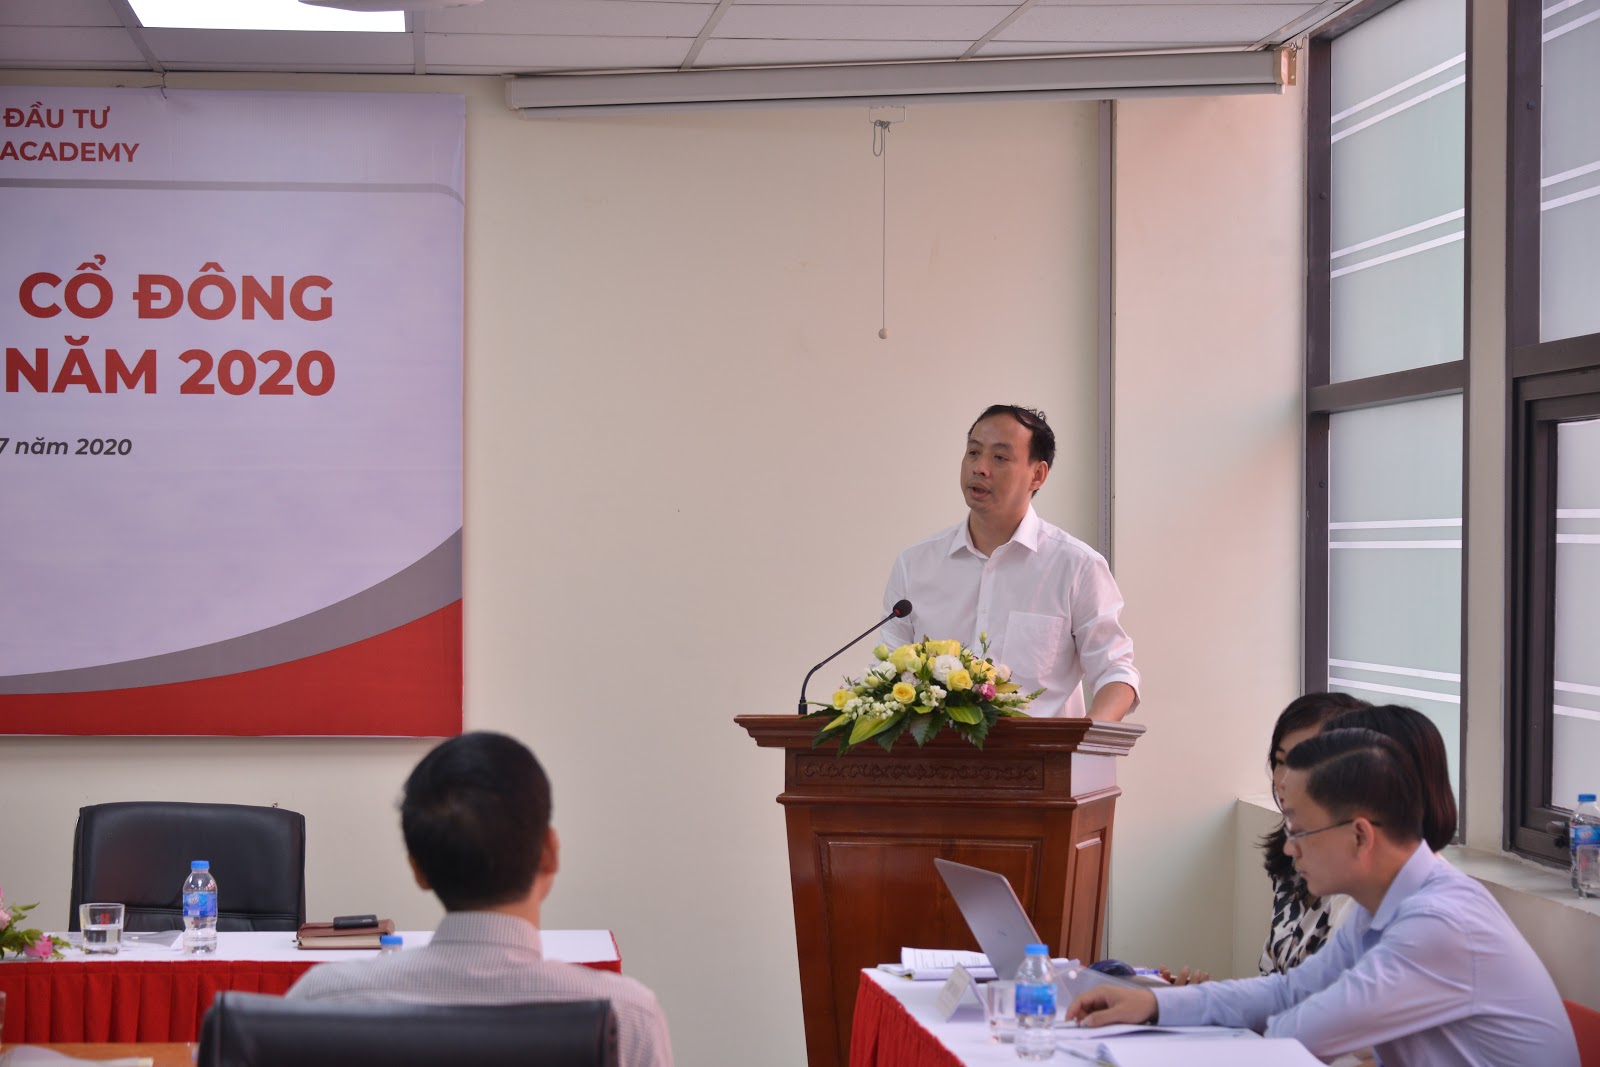 Hanoi Academy tổ chức thành công Đại hội đồng cổ đông thường niên năm 2020